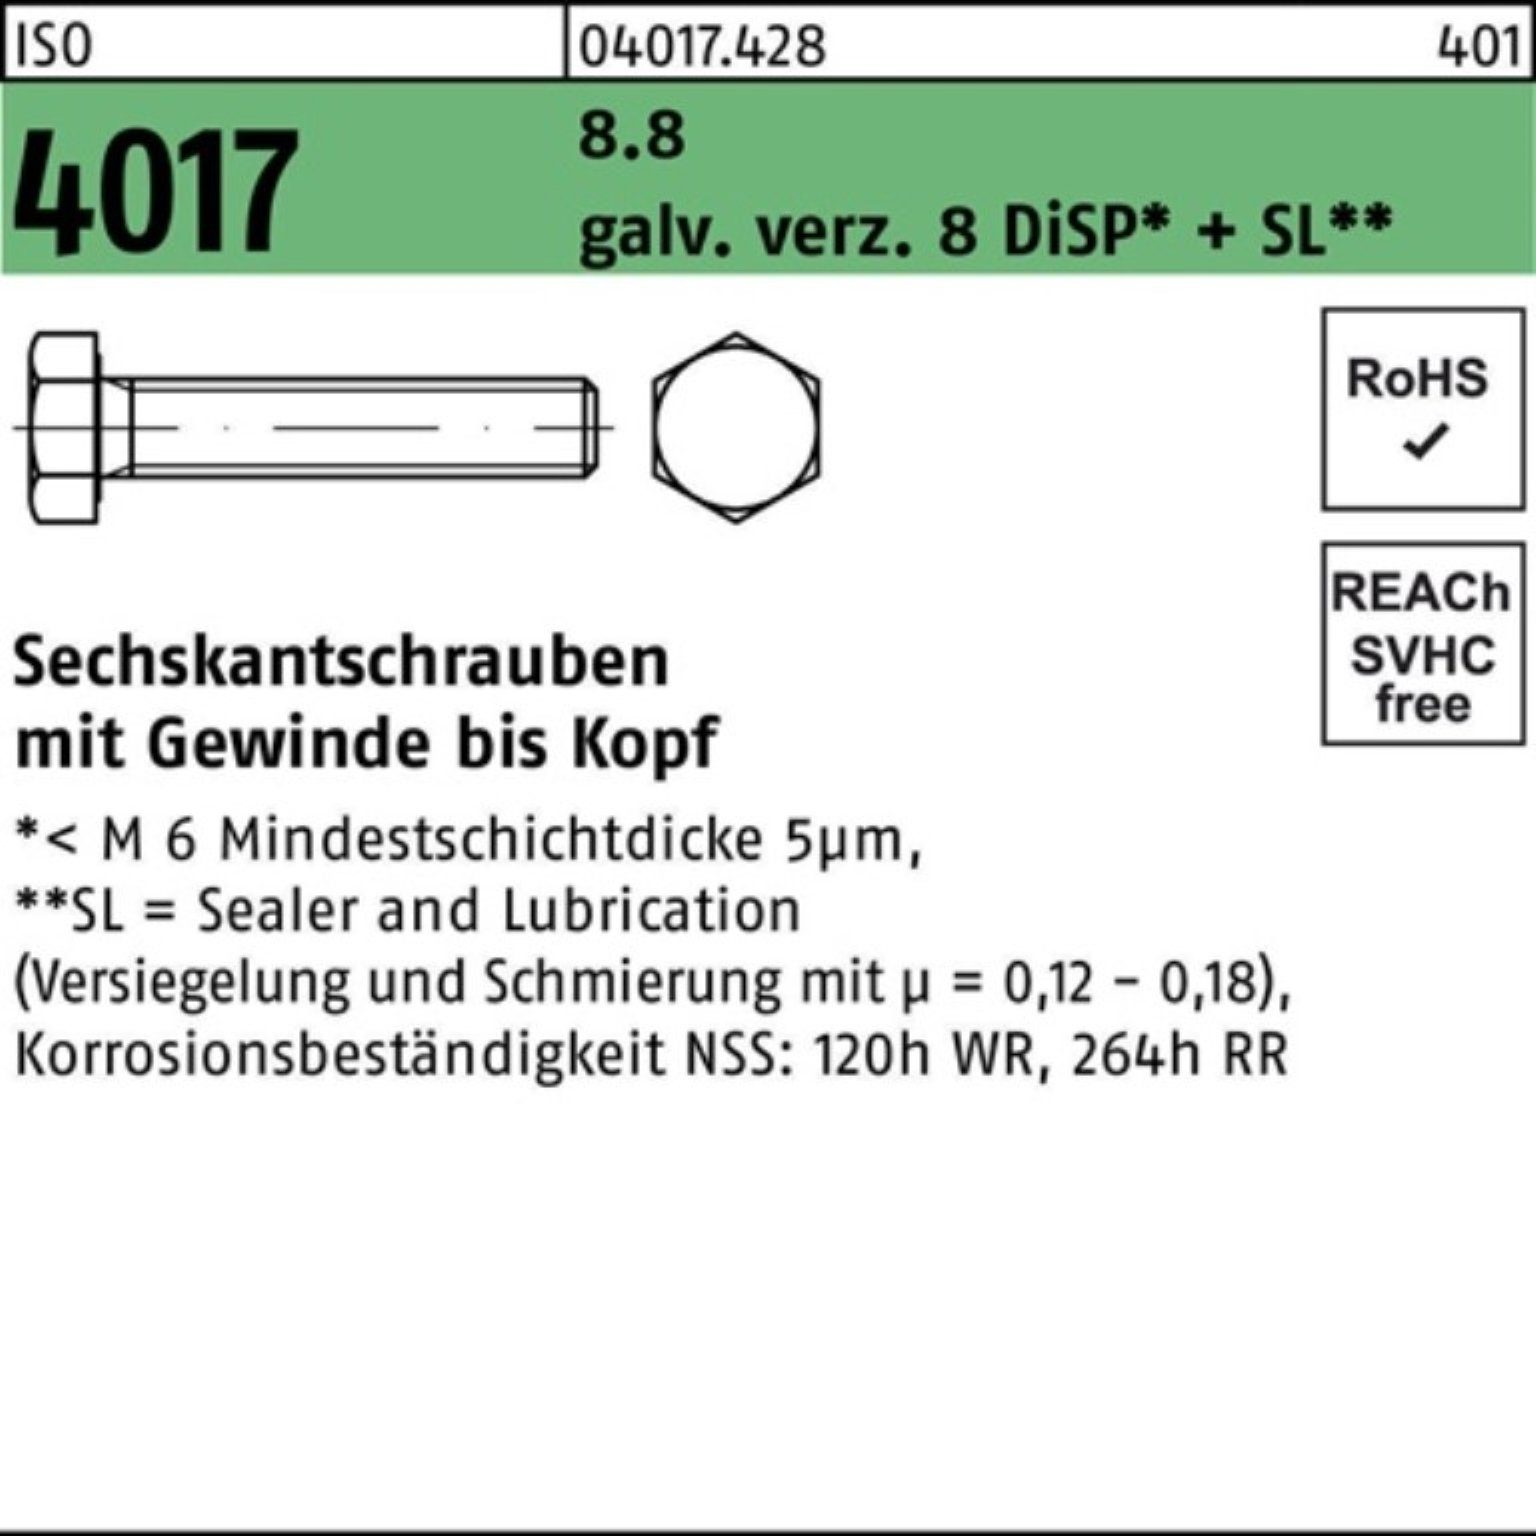 Pack Sechskantschraube VG galv.verz. Sechskantschraube 4017 100er Bufab M8x 90 8 ISO 8.8 DiSP+